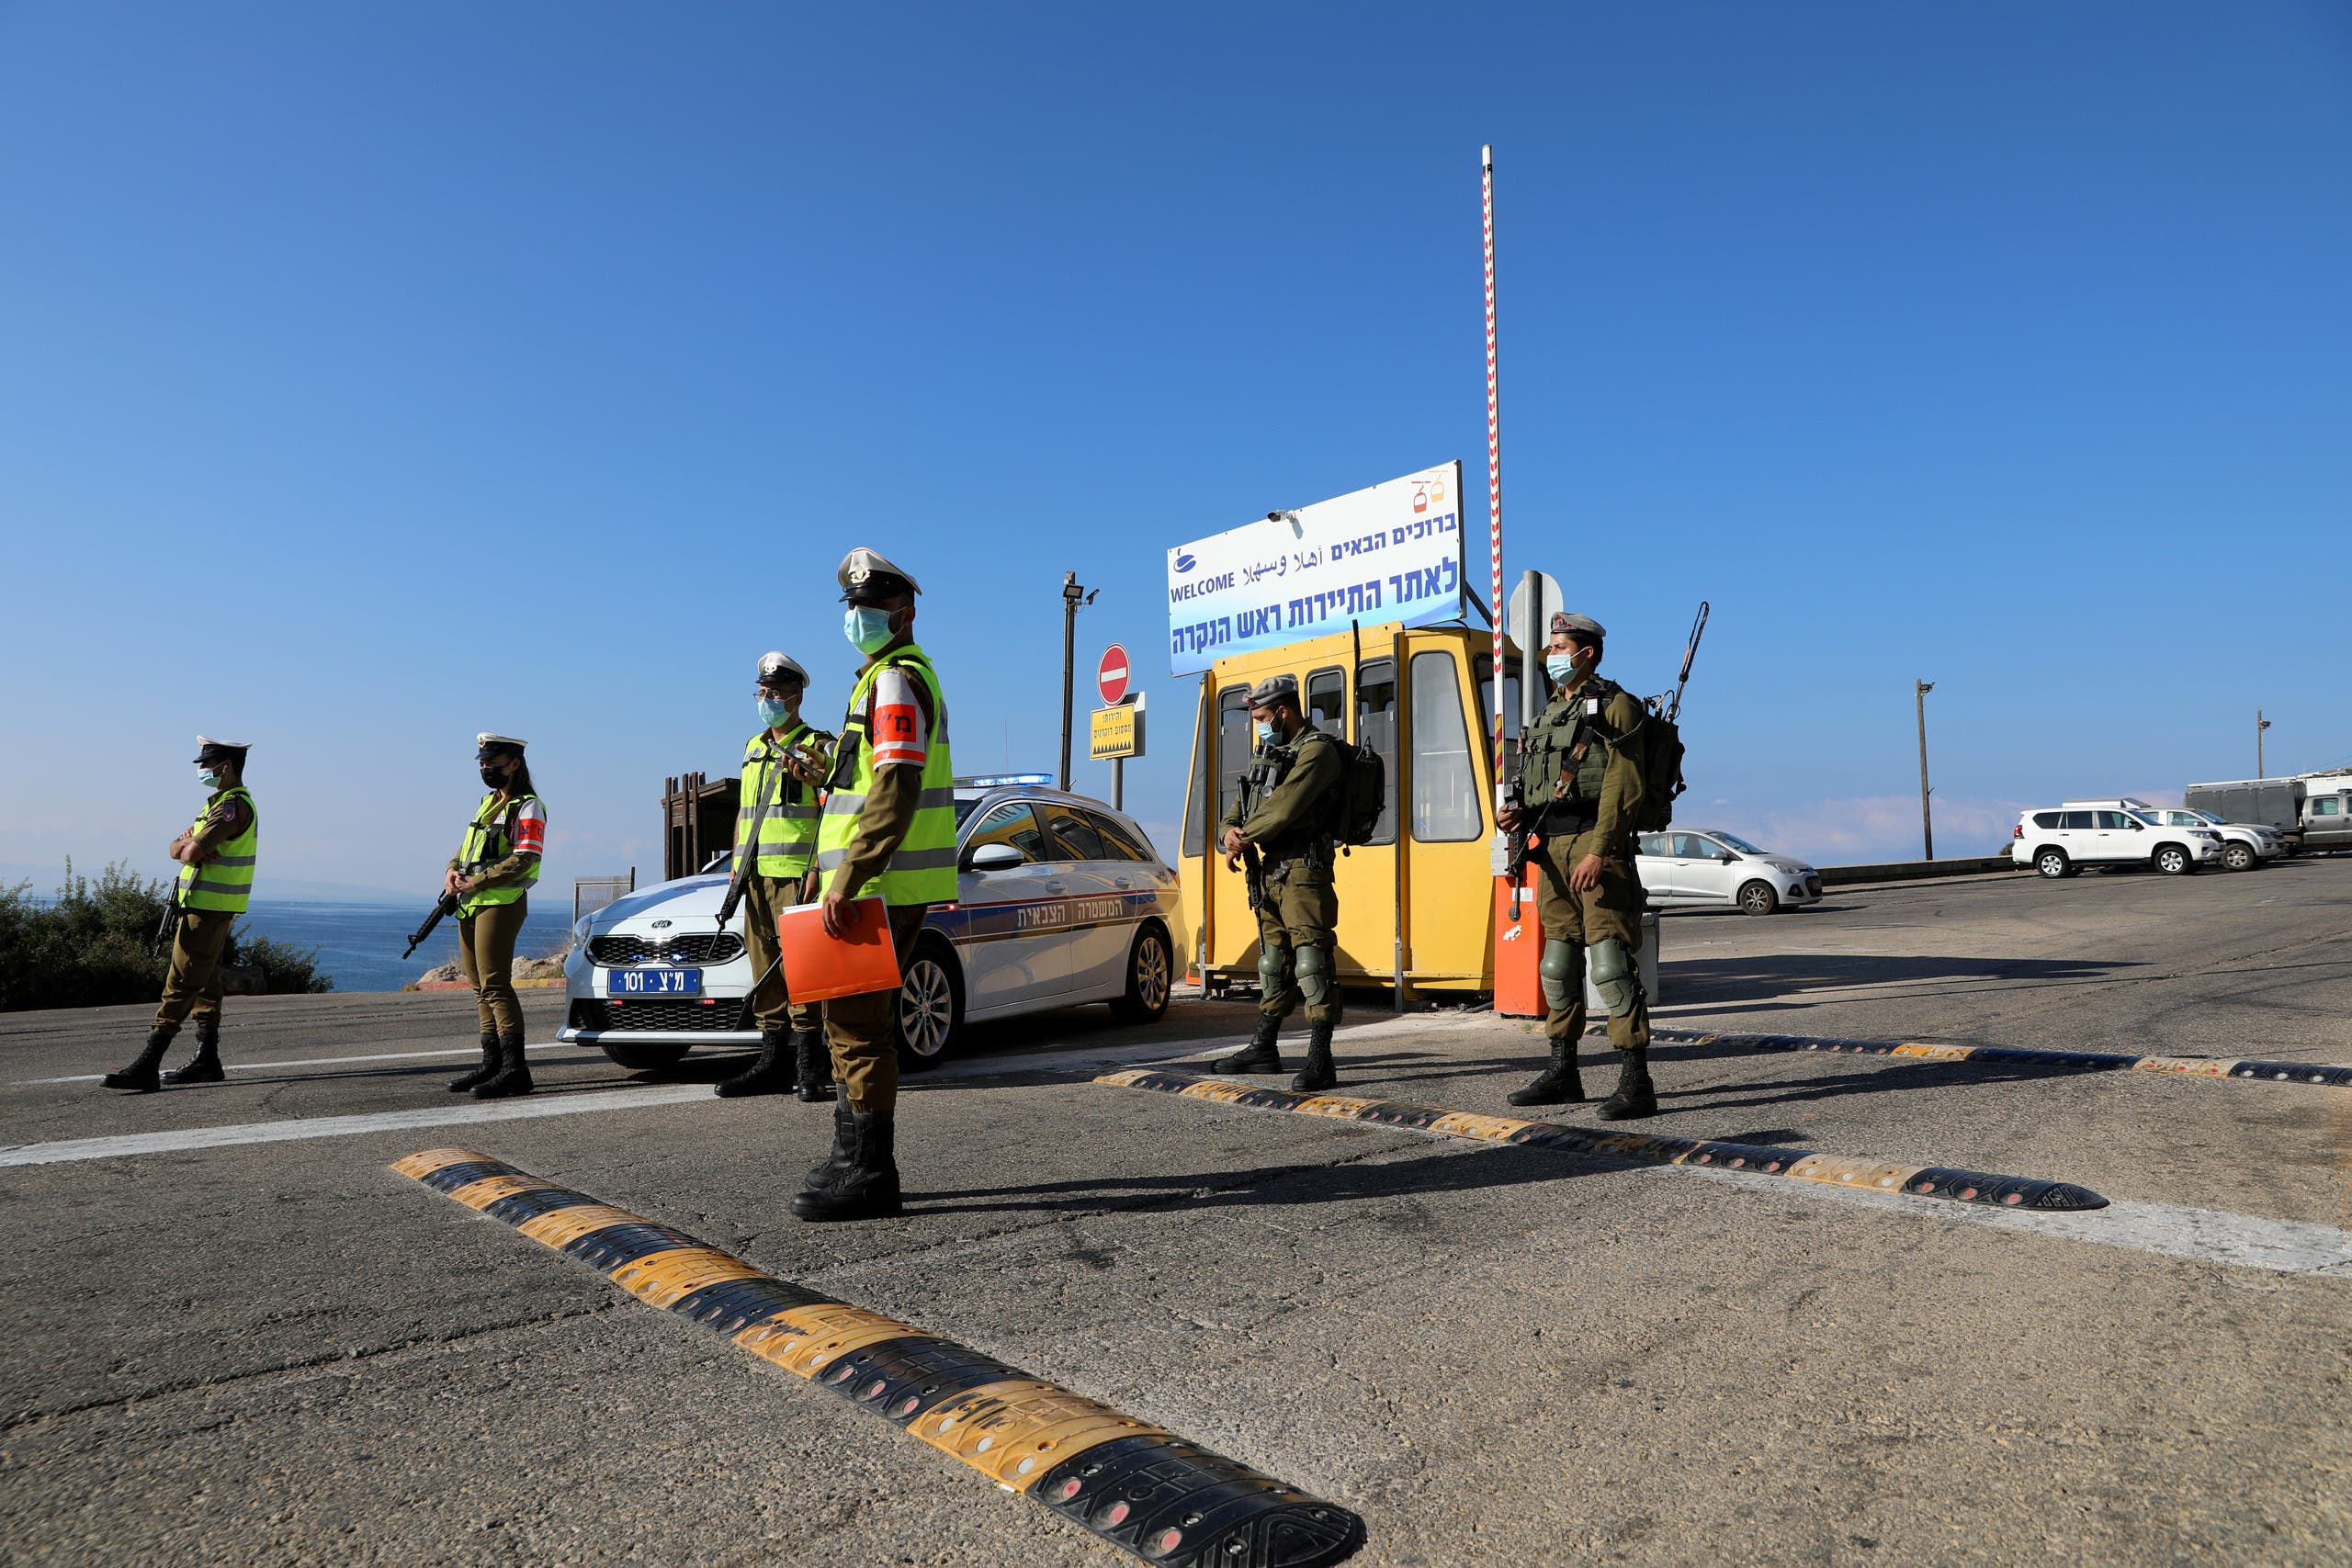 جنود إسرائيليون يقطعون الطريق المؤدي إلى الحدود اللبنانية لمنع وصول محتجين على المفاوضات